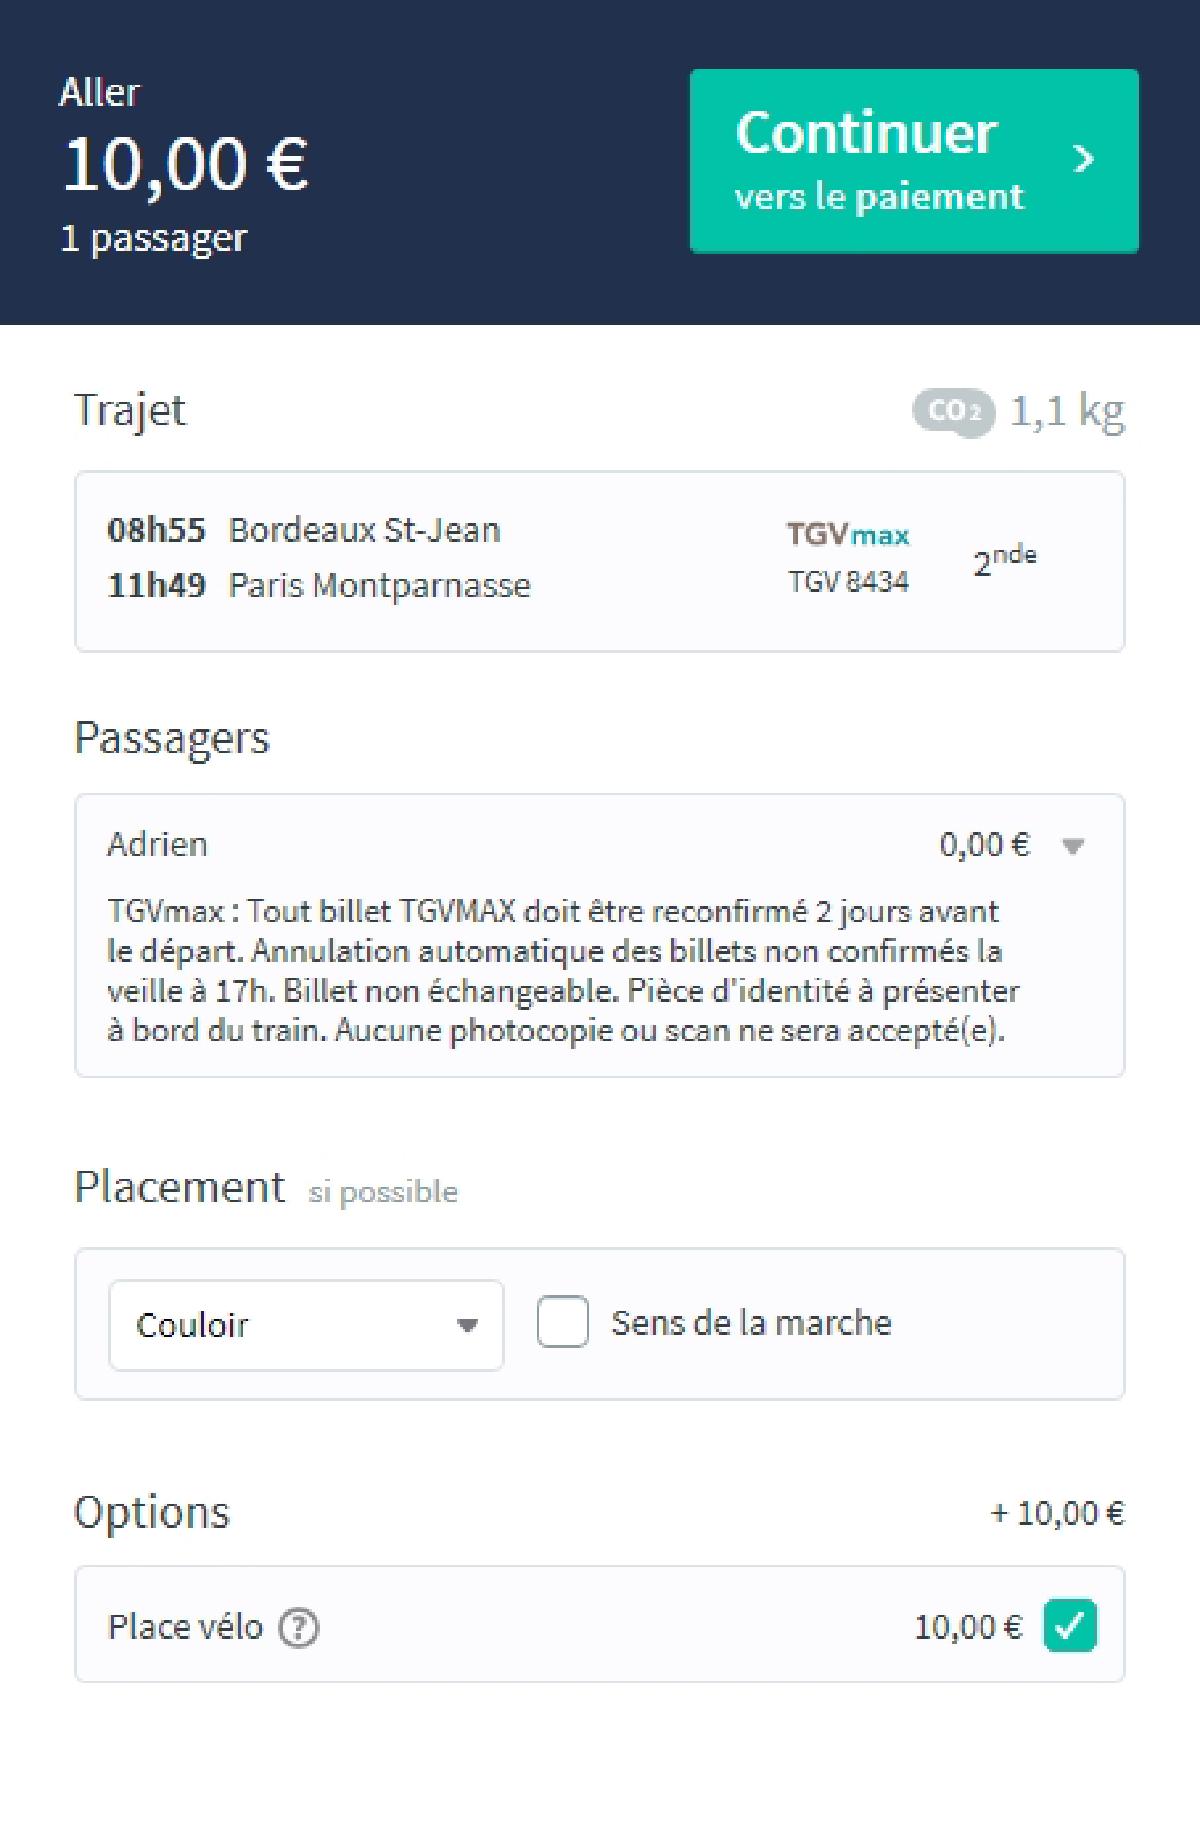 Capture d'écran du site Trainline, montrant une réservation de train Bordeaux — Paris, avec vélo, pour 10 euros.